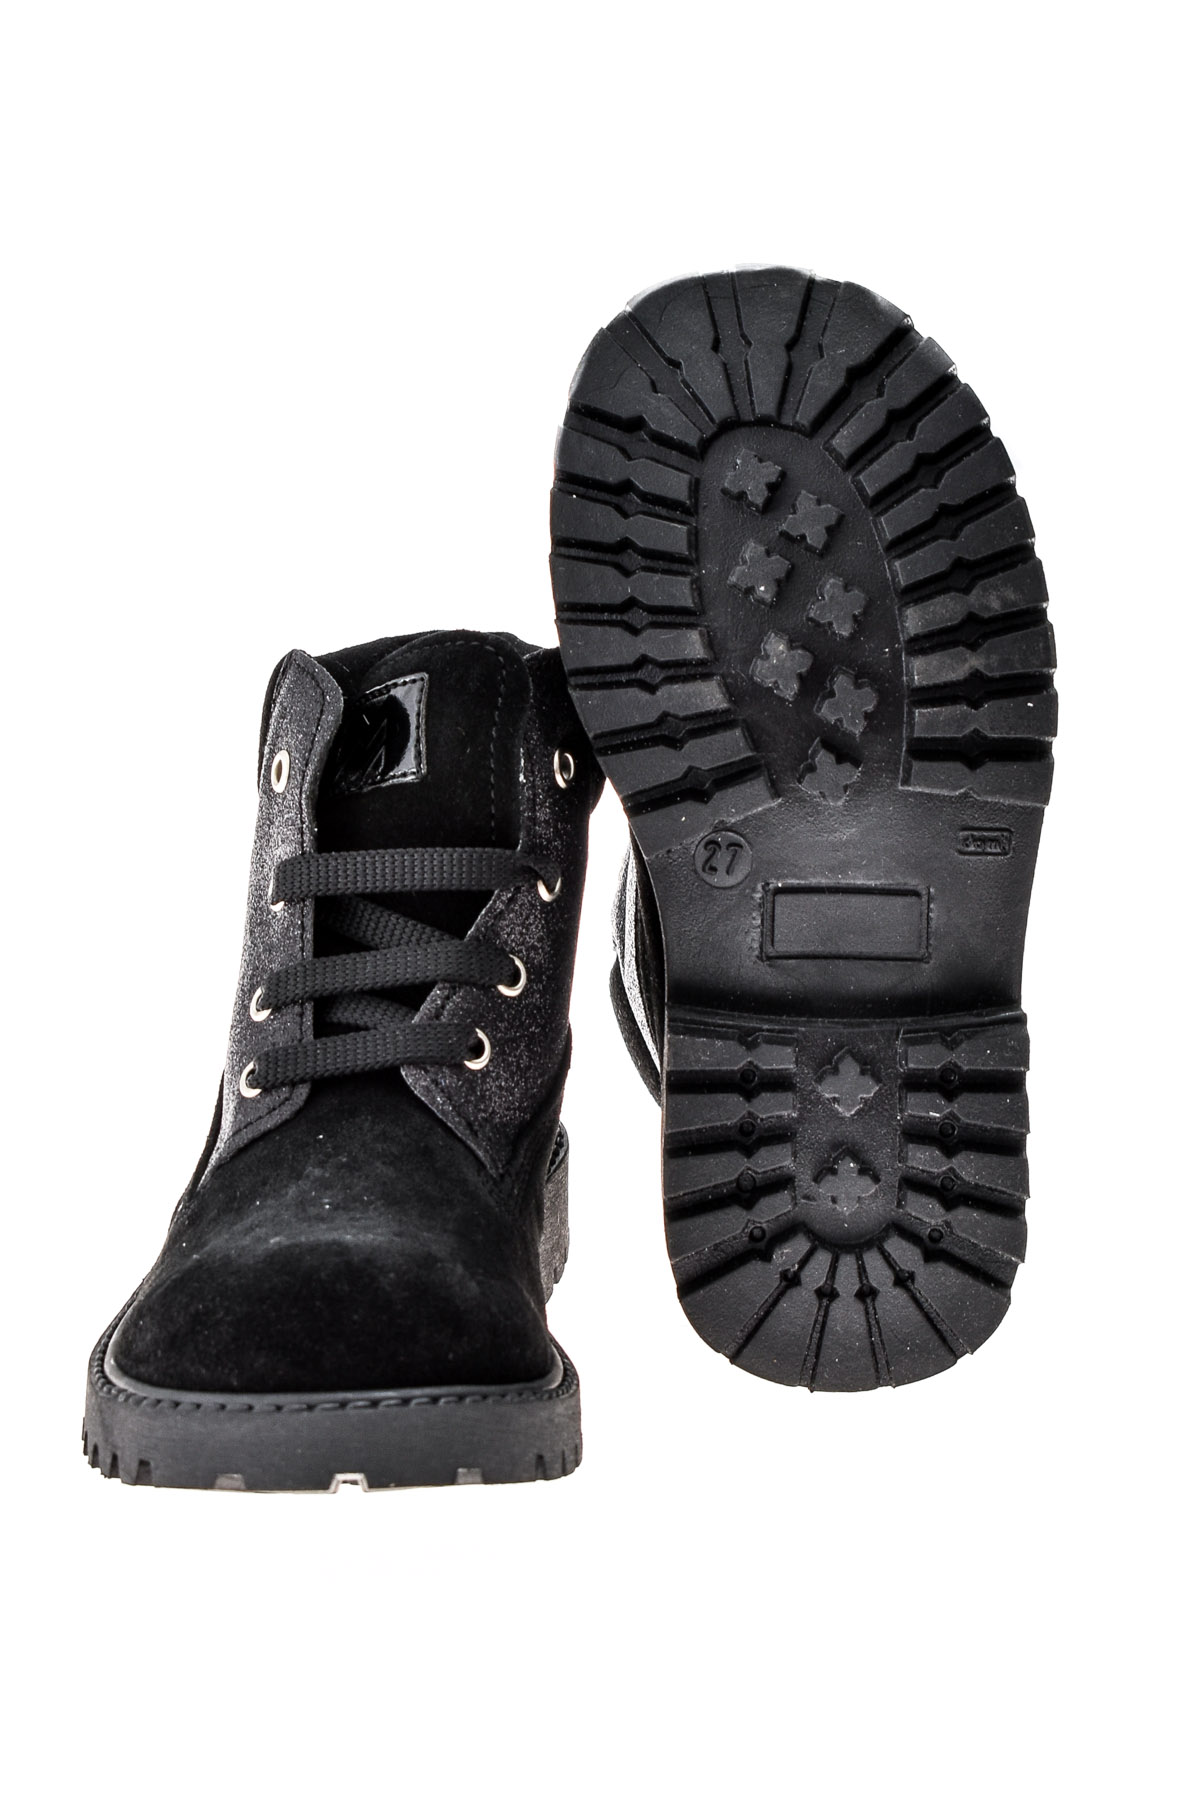 Girl's boots - SHOEB 76 - 3